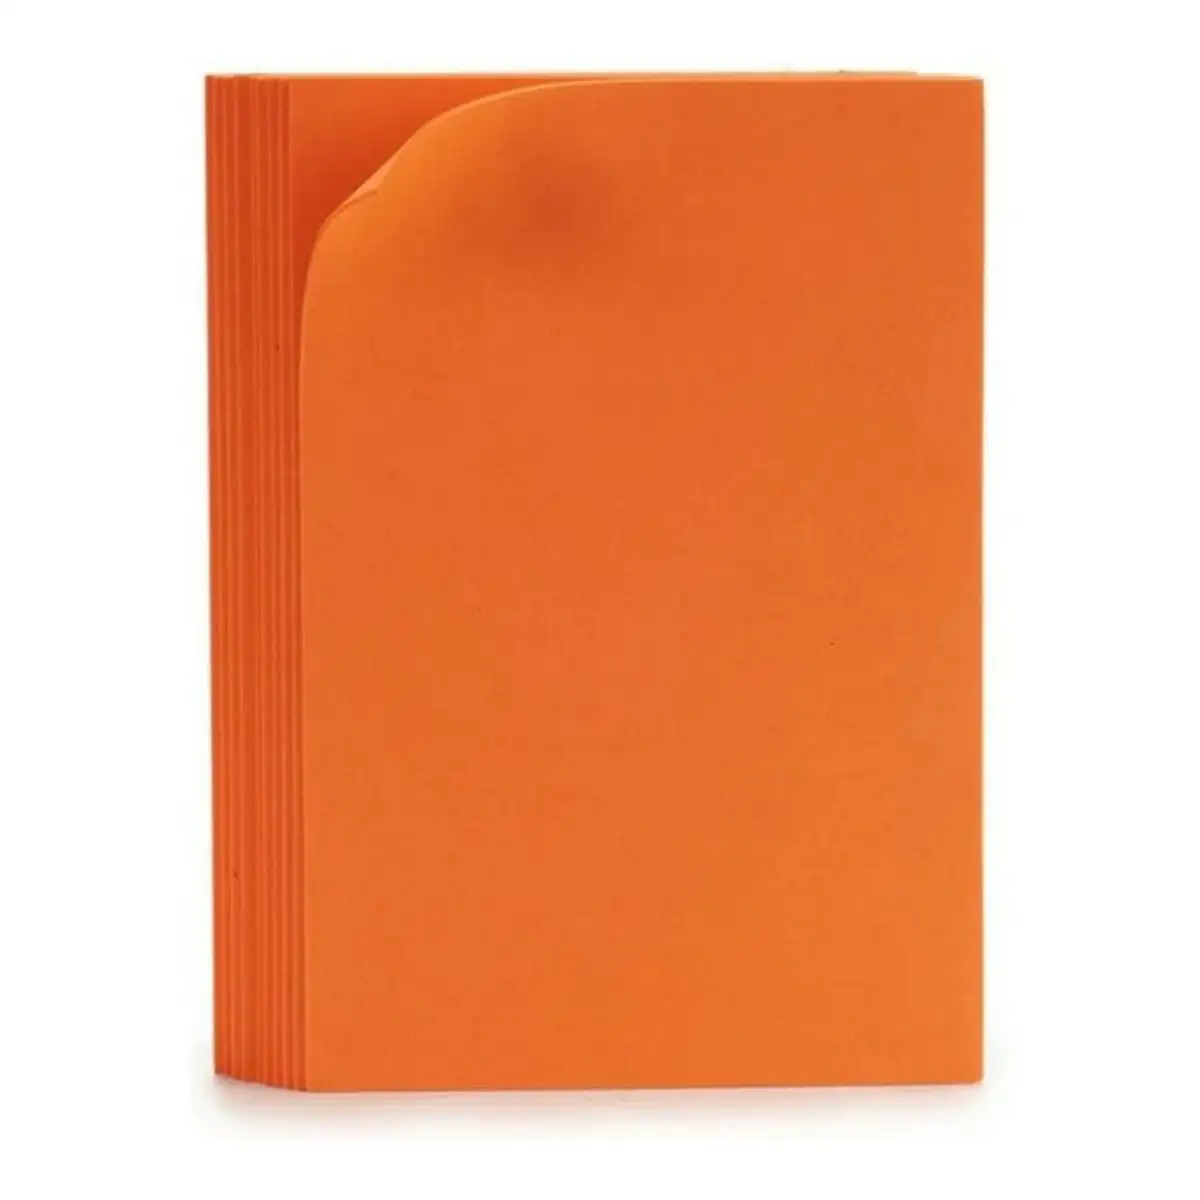 Feuille de mousse orange 10 pieces 45 x 65 cm_5279. DIAYTAR SENEGAL - Où Chaque Produit a sa Place. Parcourez notre catalogue et choisissez des articles qui s'intègrent parfaitement à votre style et à votre espace.